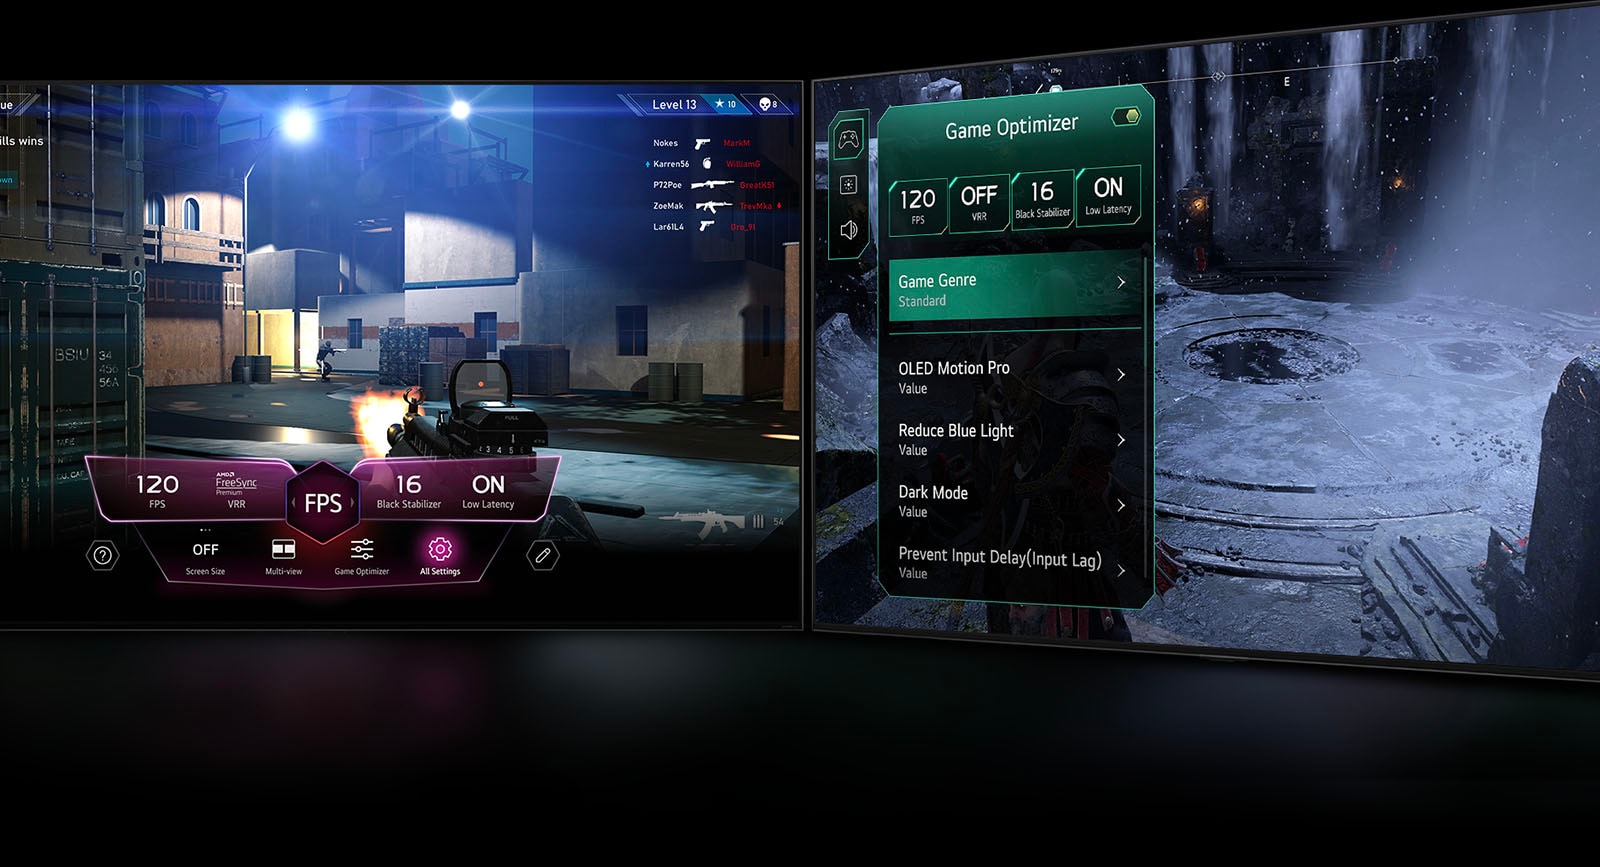 FPS 遊戲場景和遊戲儀表板在玩遊戲時在畫面上出現。昏暗的冬季場景和遊戲最佳化選單在遊戲上出現。